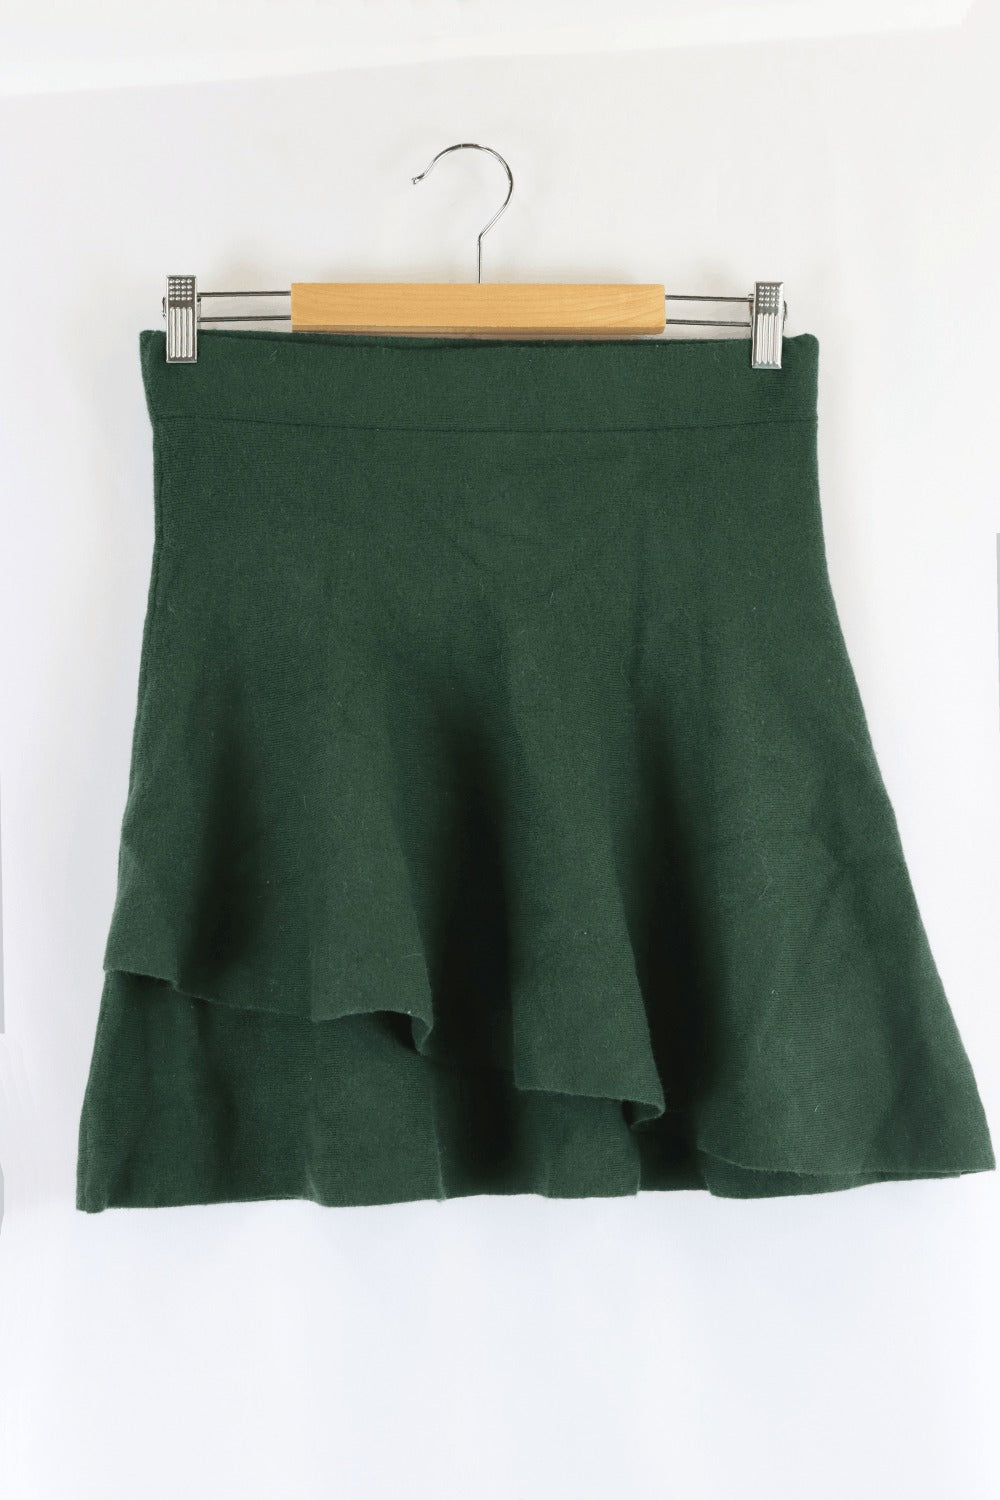 Oxford Green Skirt 12.